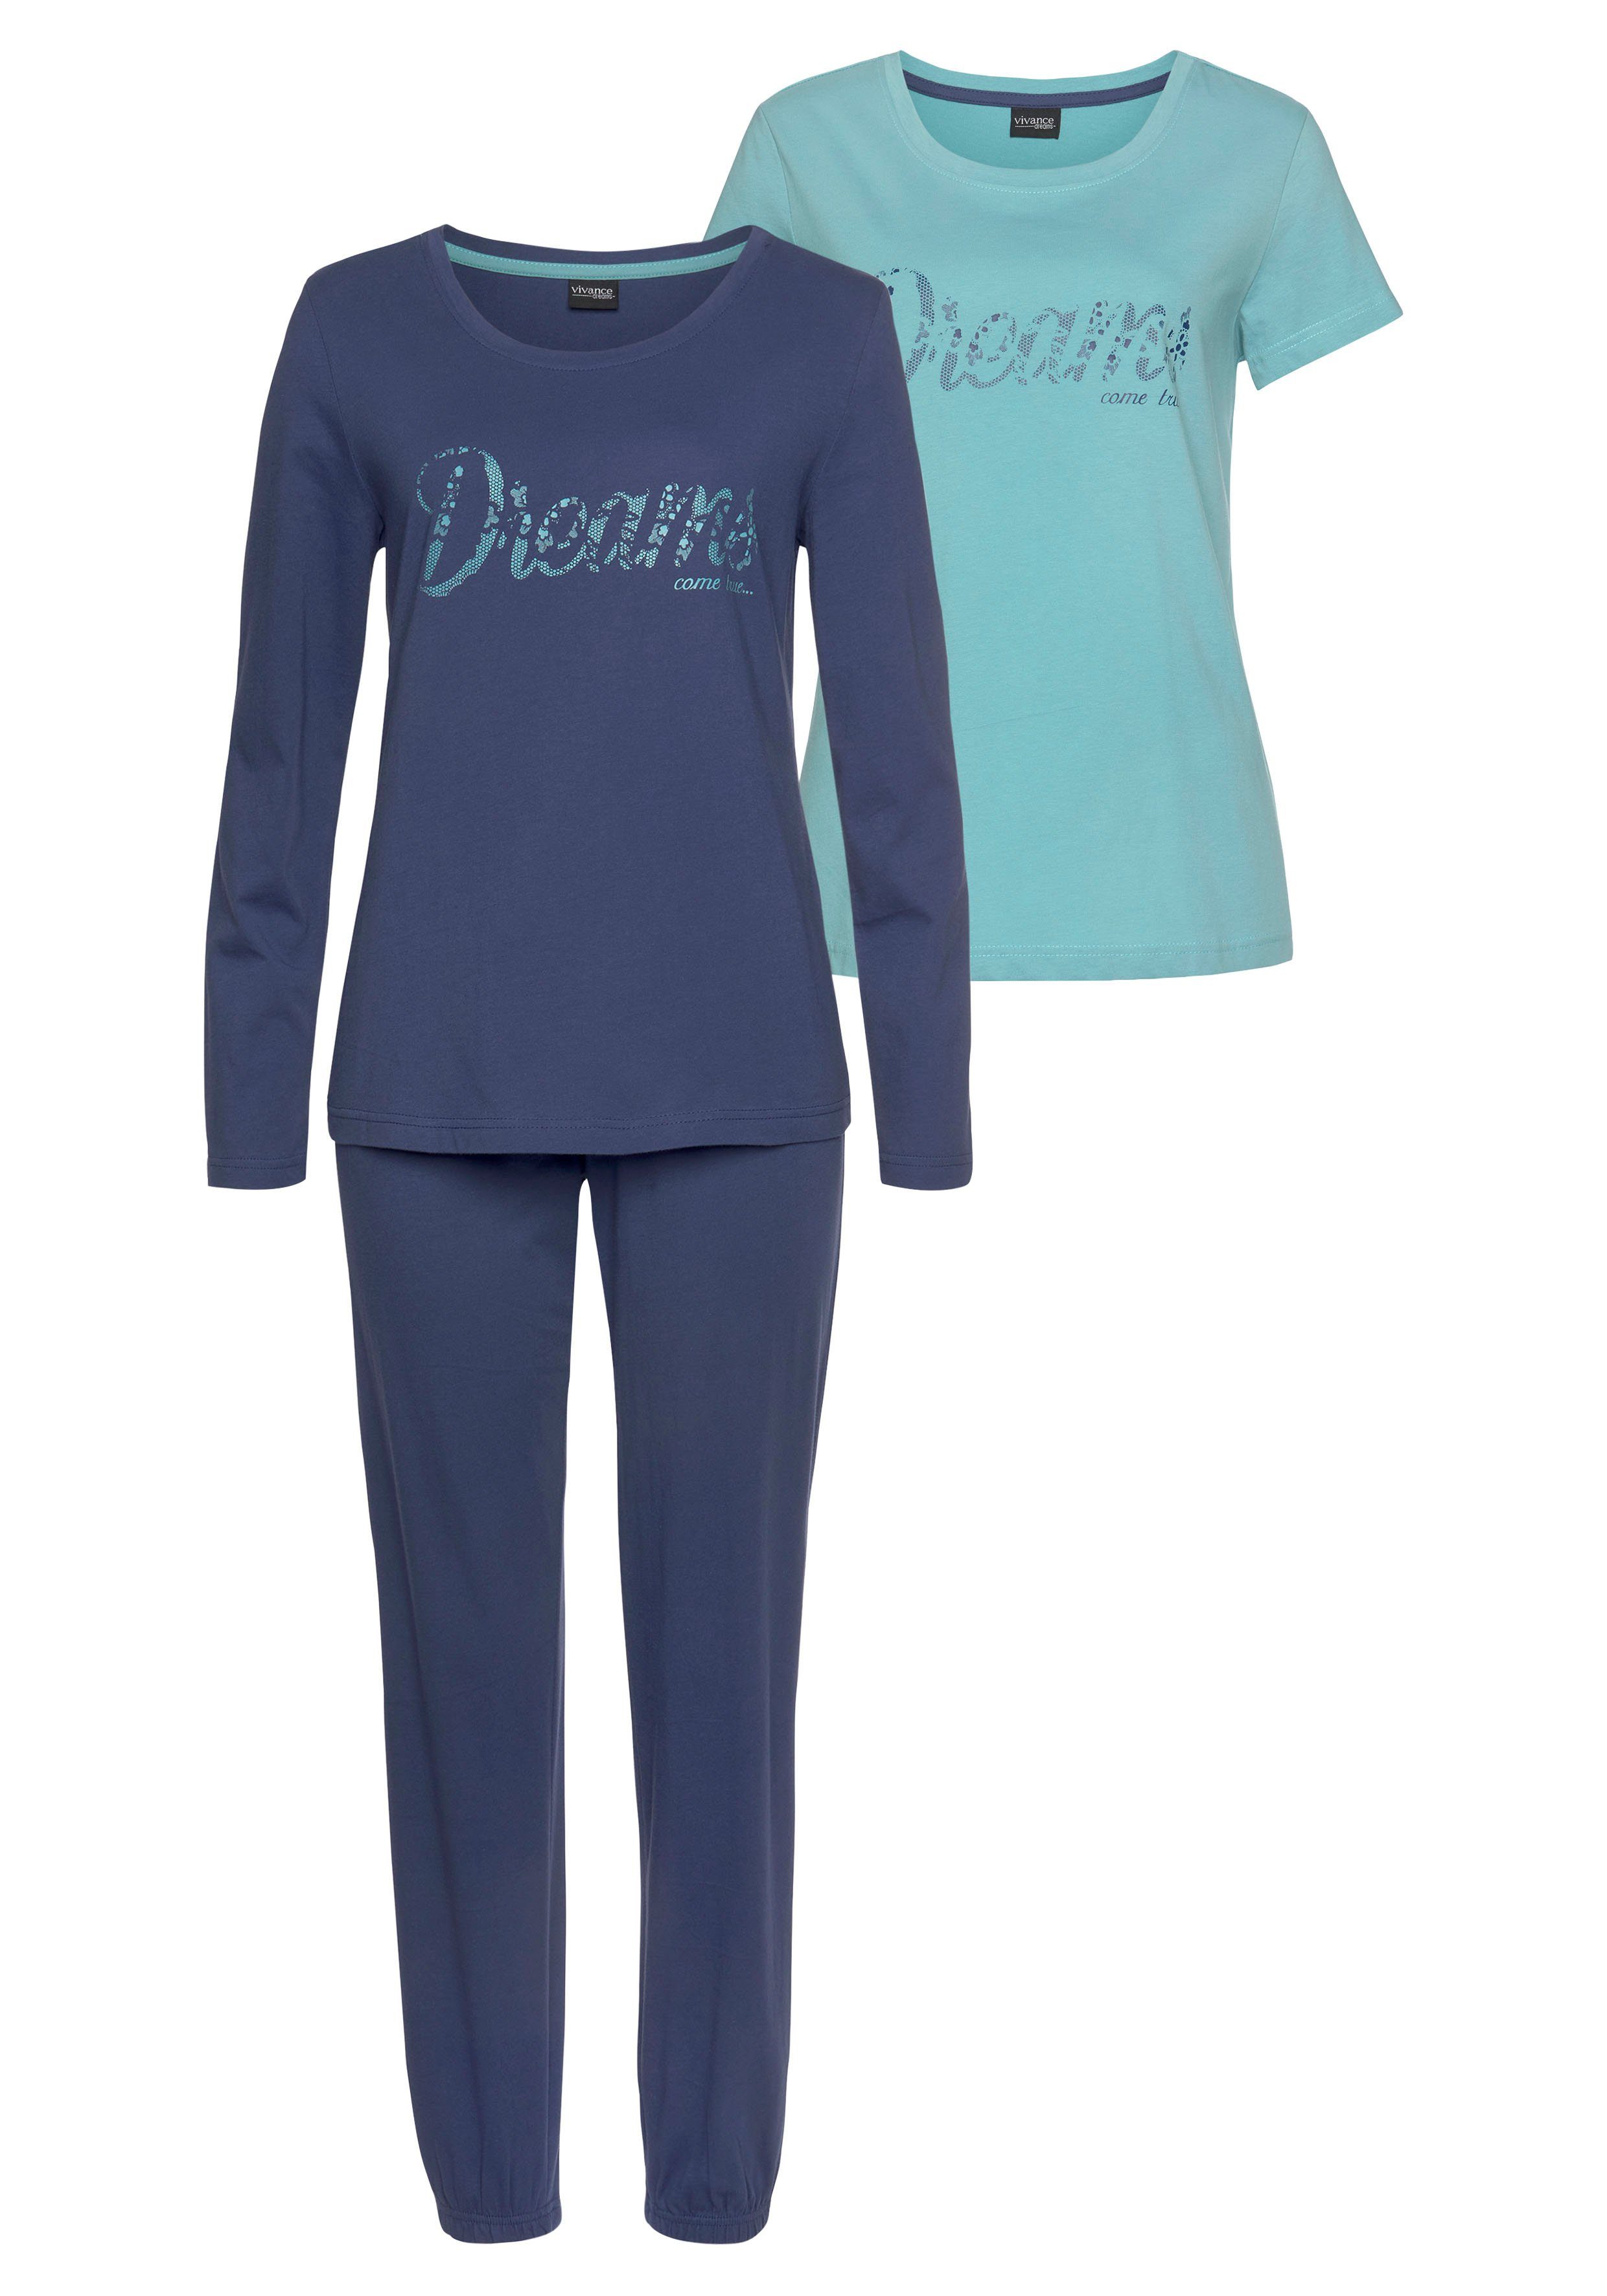 Vivance Dreams Pyjama (Set, Frontschriftzug blau, dunkelblau tlg) mit 3